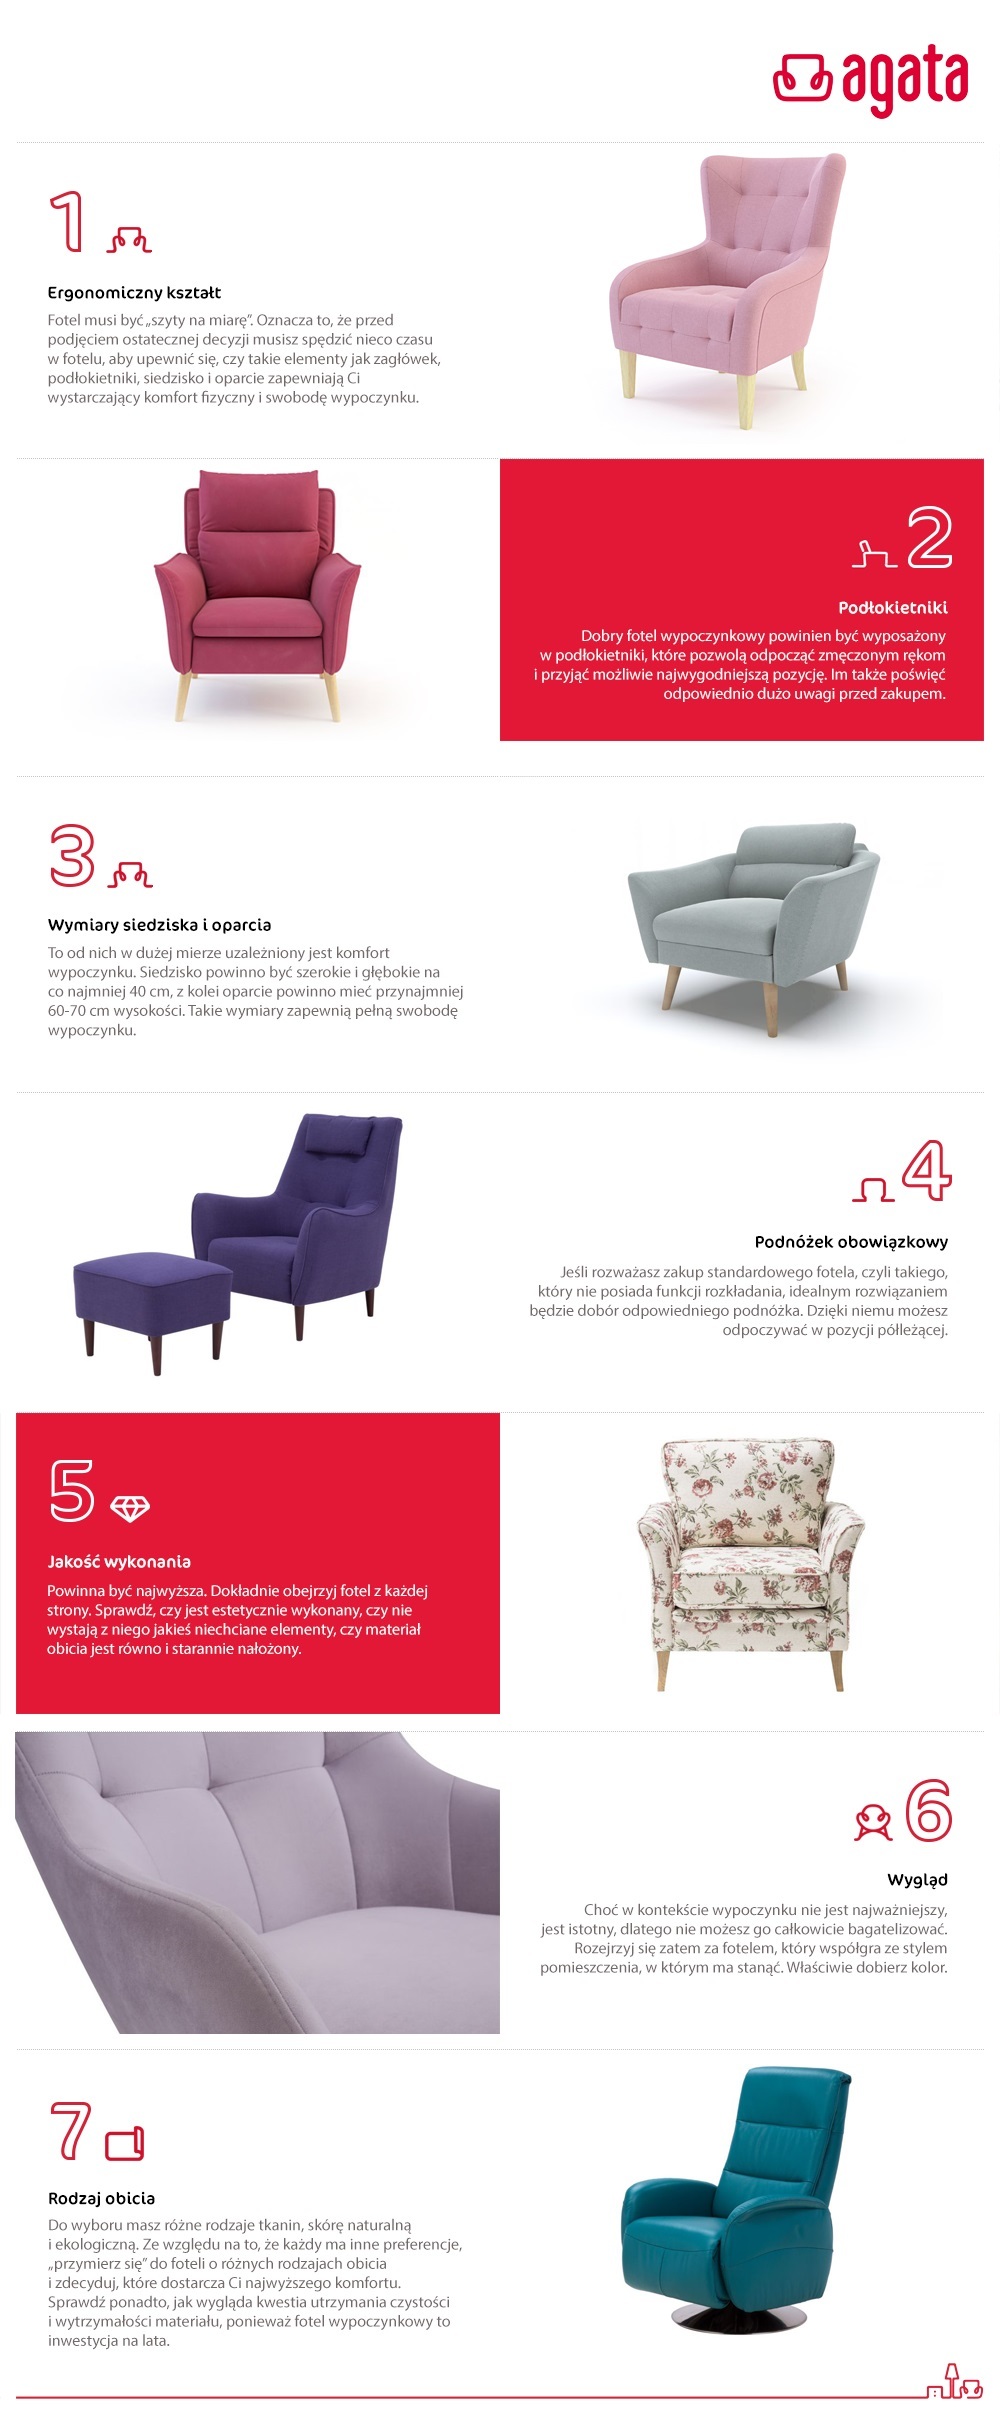 Jak wybrać idealny fotel wypoczynkowy infografika